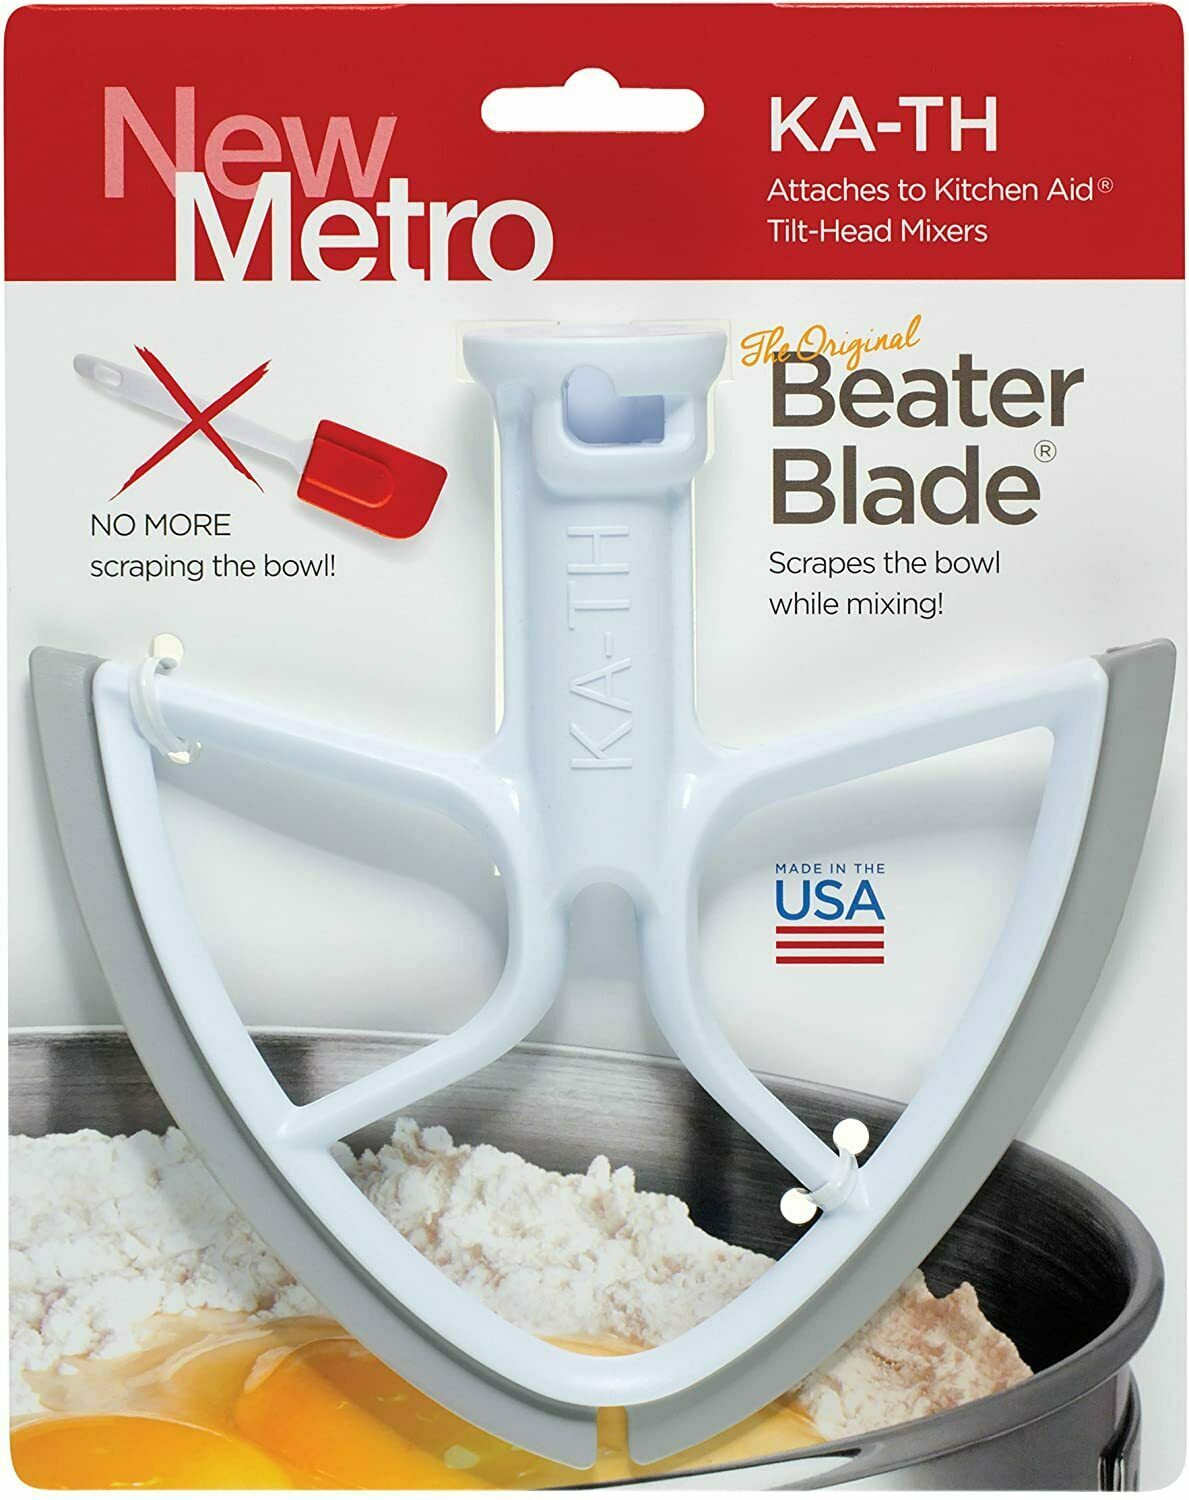 Original Beater Blade for Kitchen Aid Tilt-Head Mixer